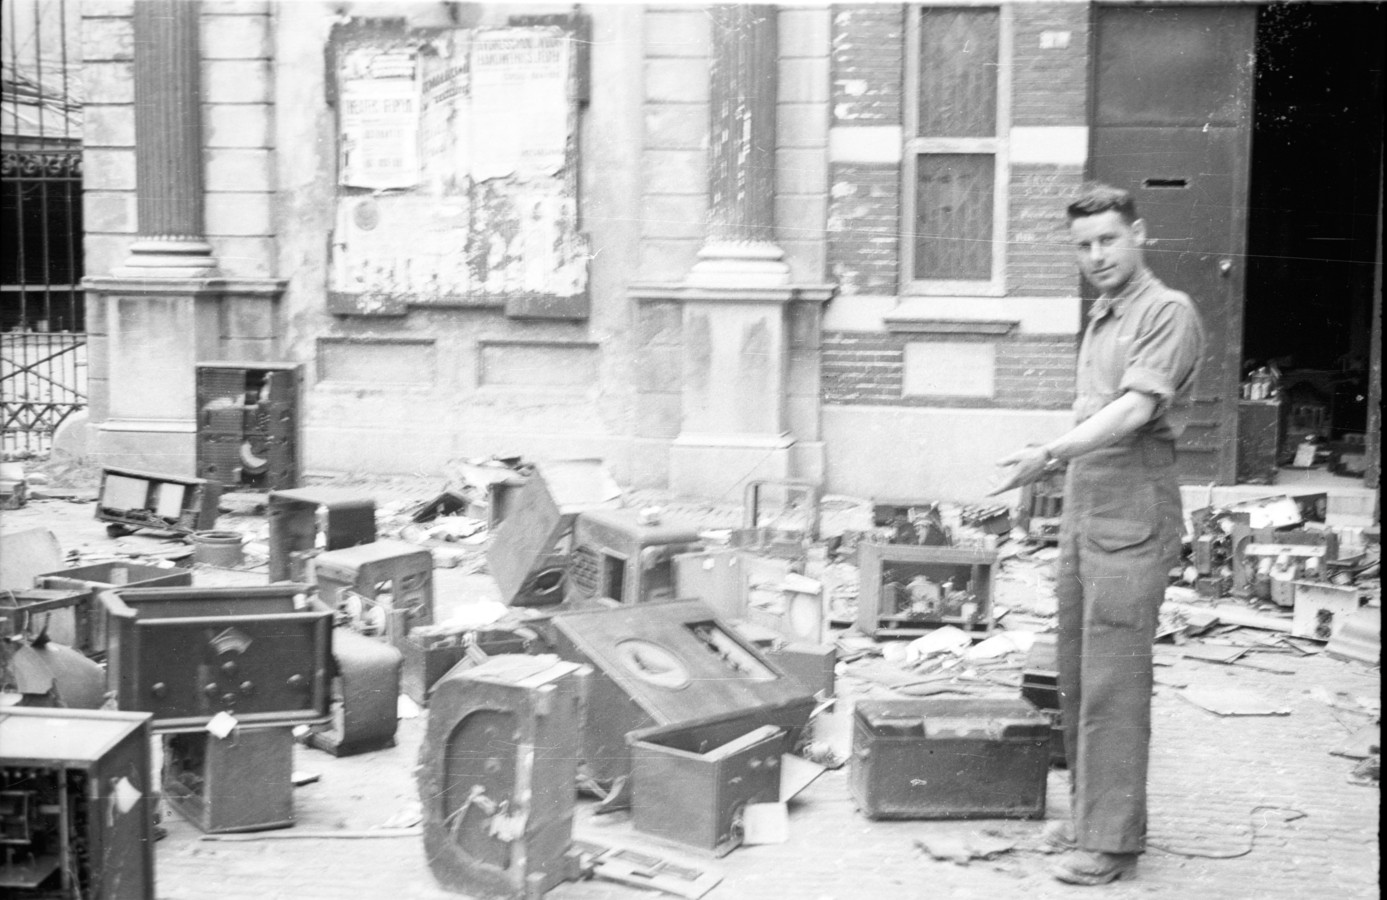 Een foto van kort na de oorlog toont de Joodse Godsdienstschool aan de Kippenmarkt, met door de Duitsers gevorderde radio's op straat. Een geallieerde militair wijst naar de plek